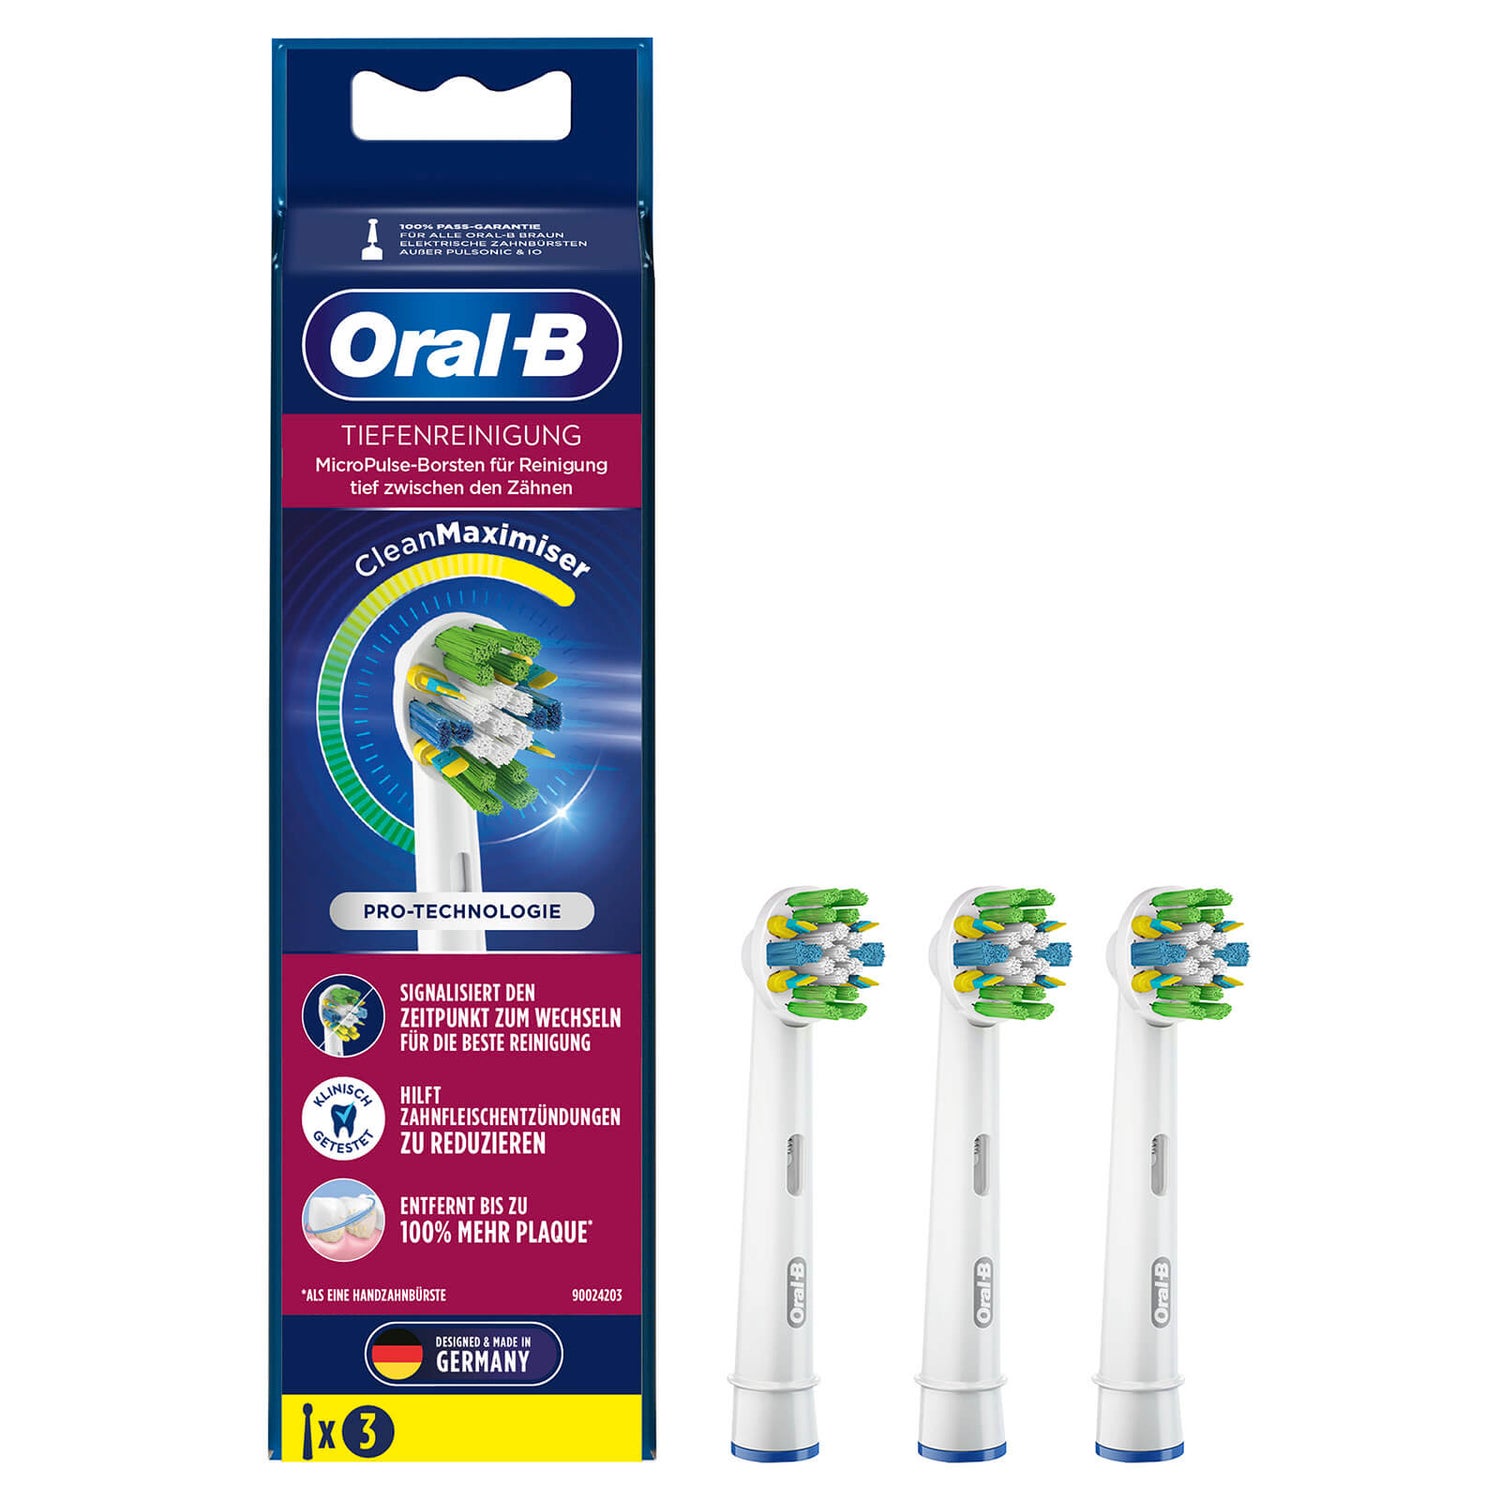 Oral-B Tiefenreinigung Aufsteckbürsten, weiß, 3 Stück